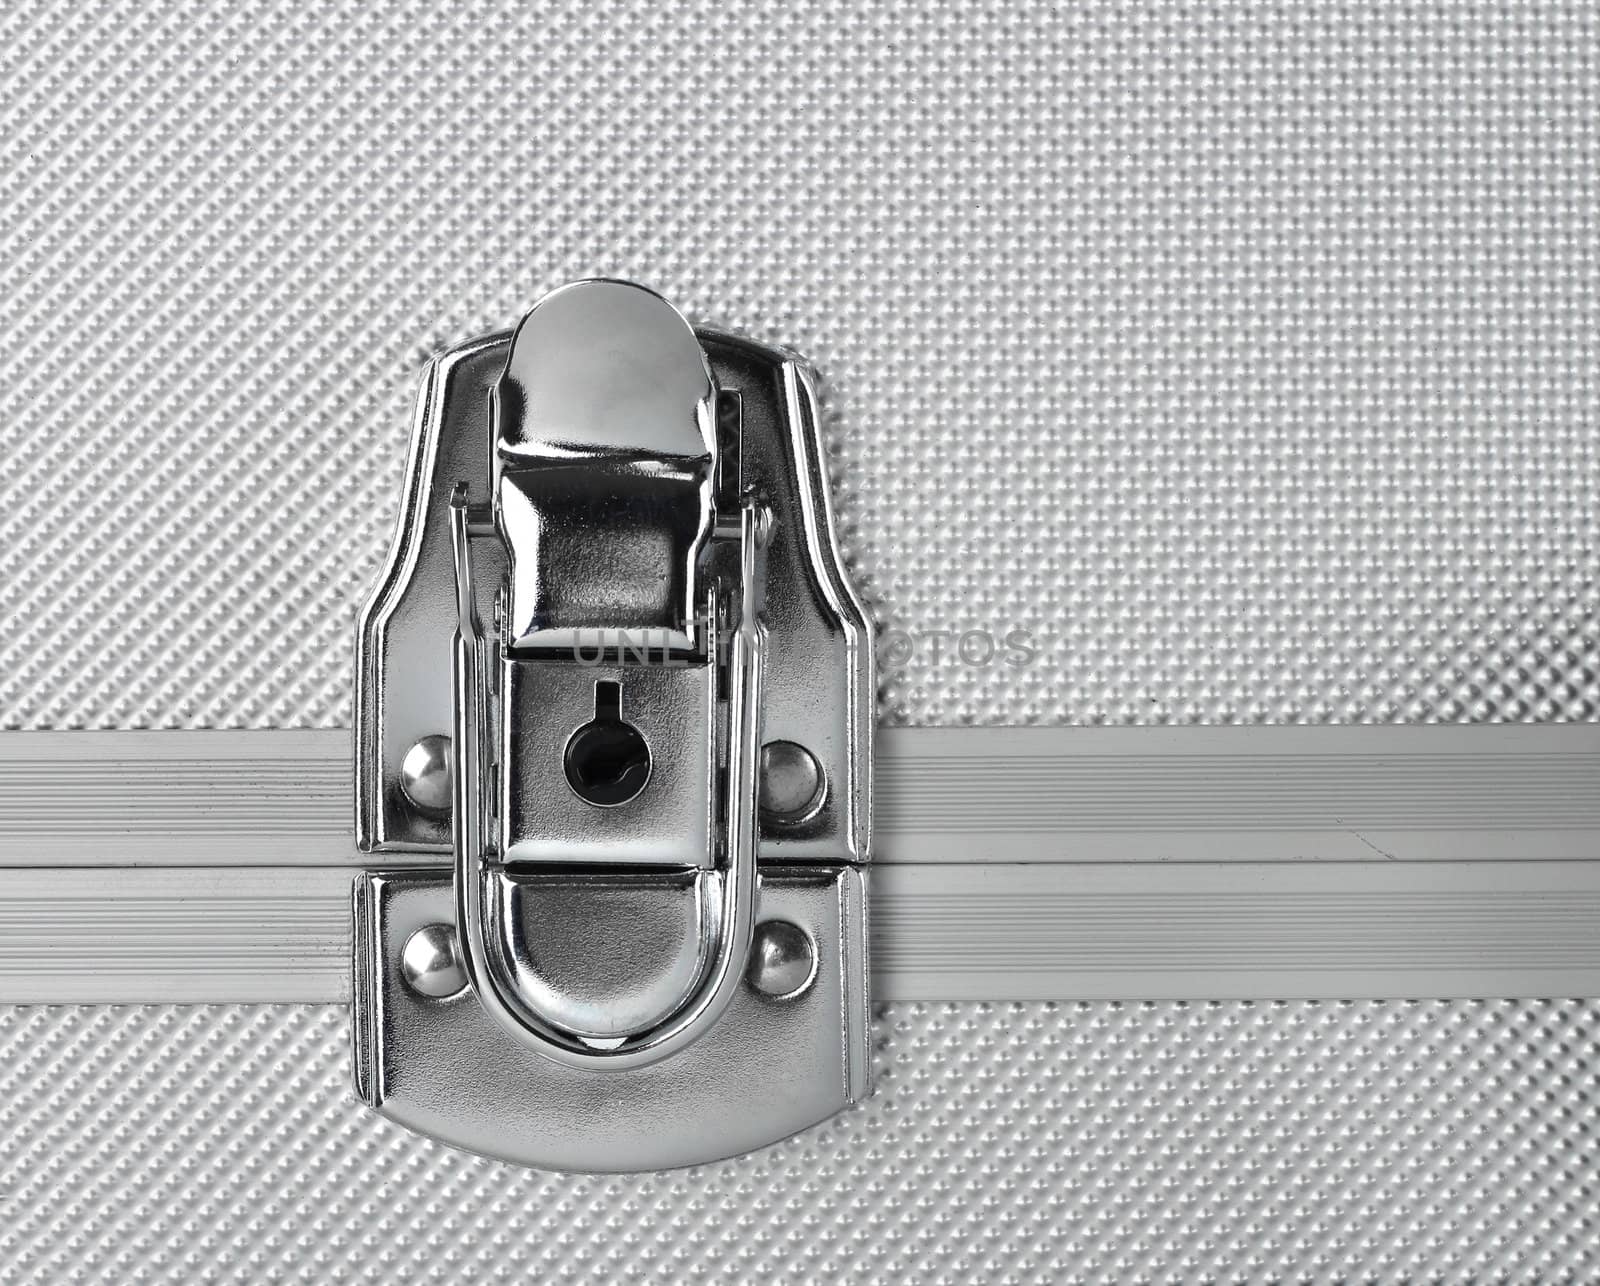 Steel lock aluminum background by anterovium